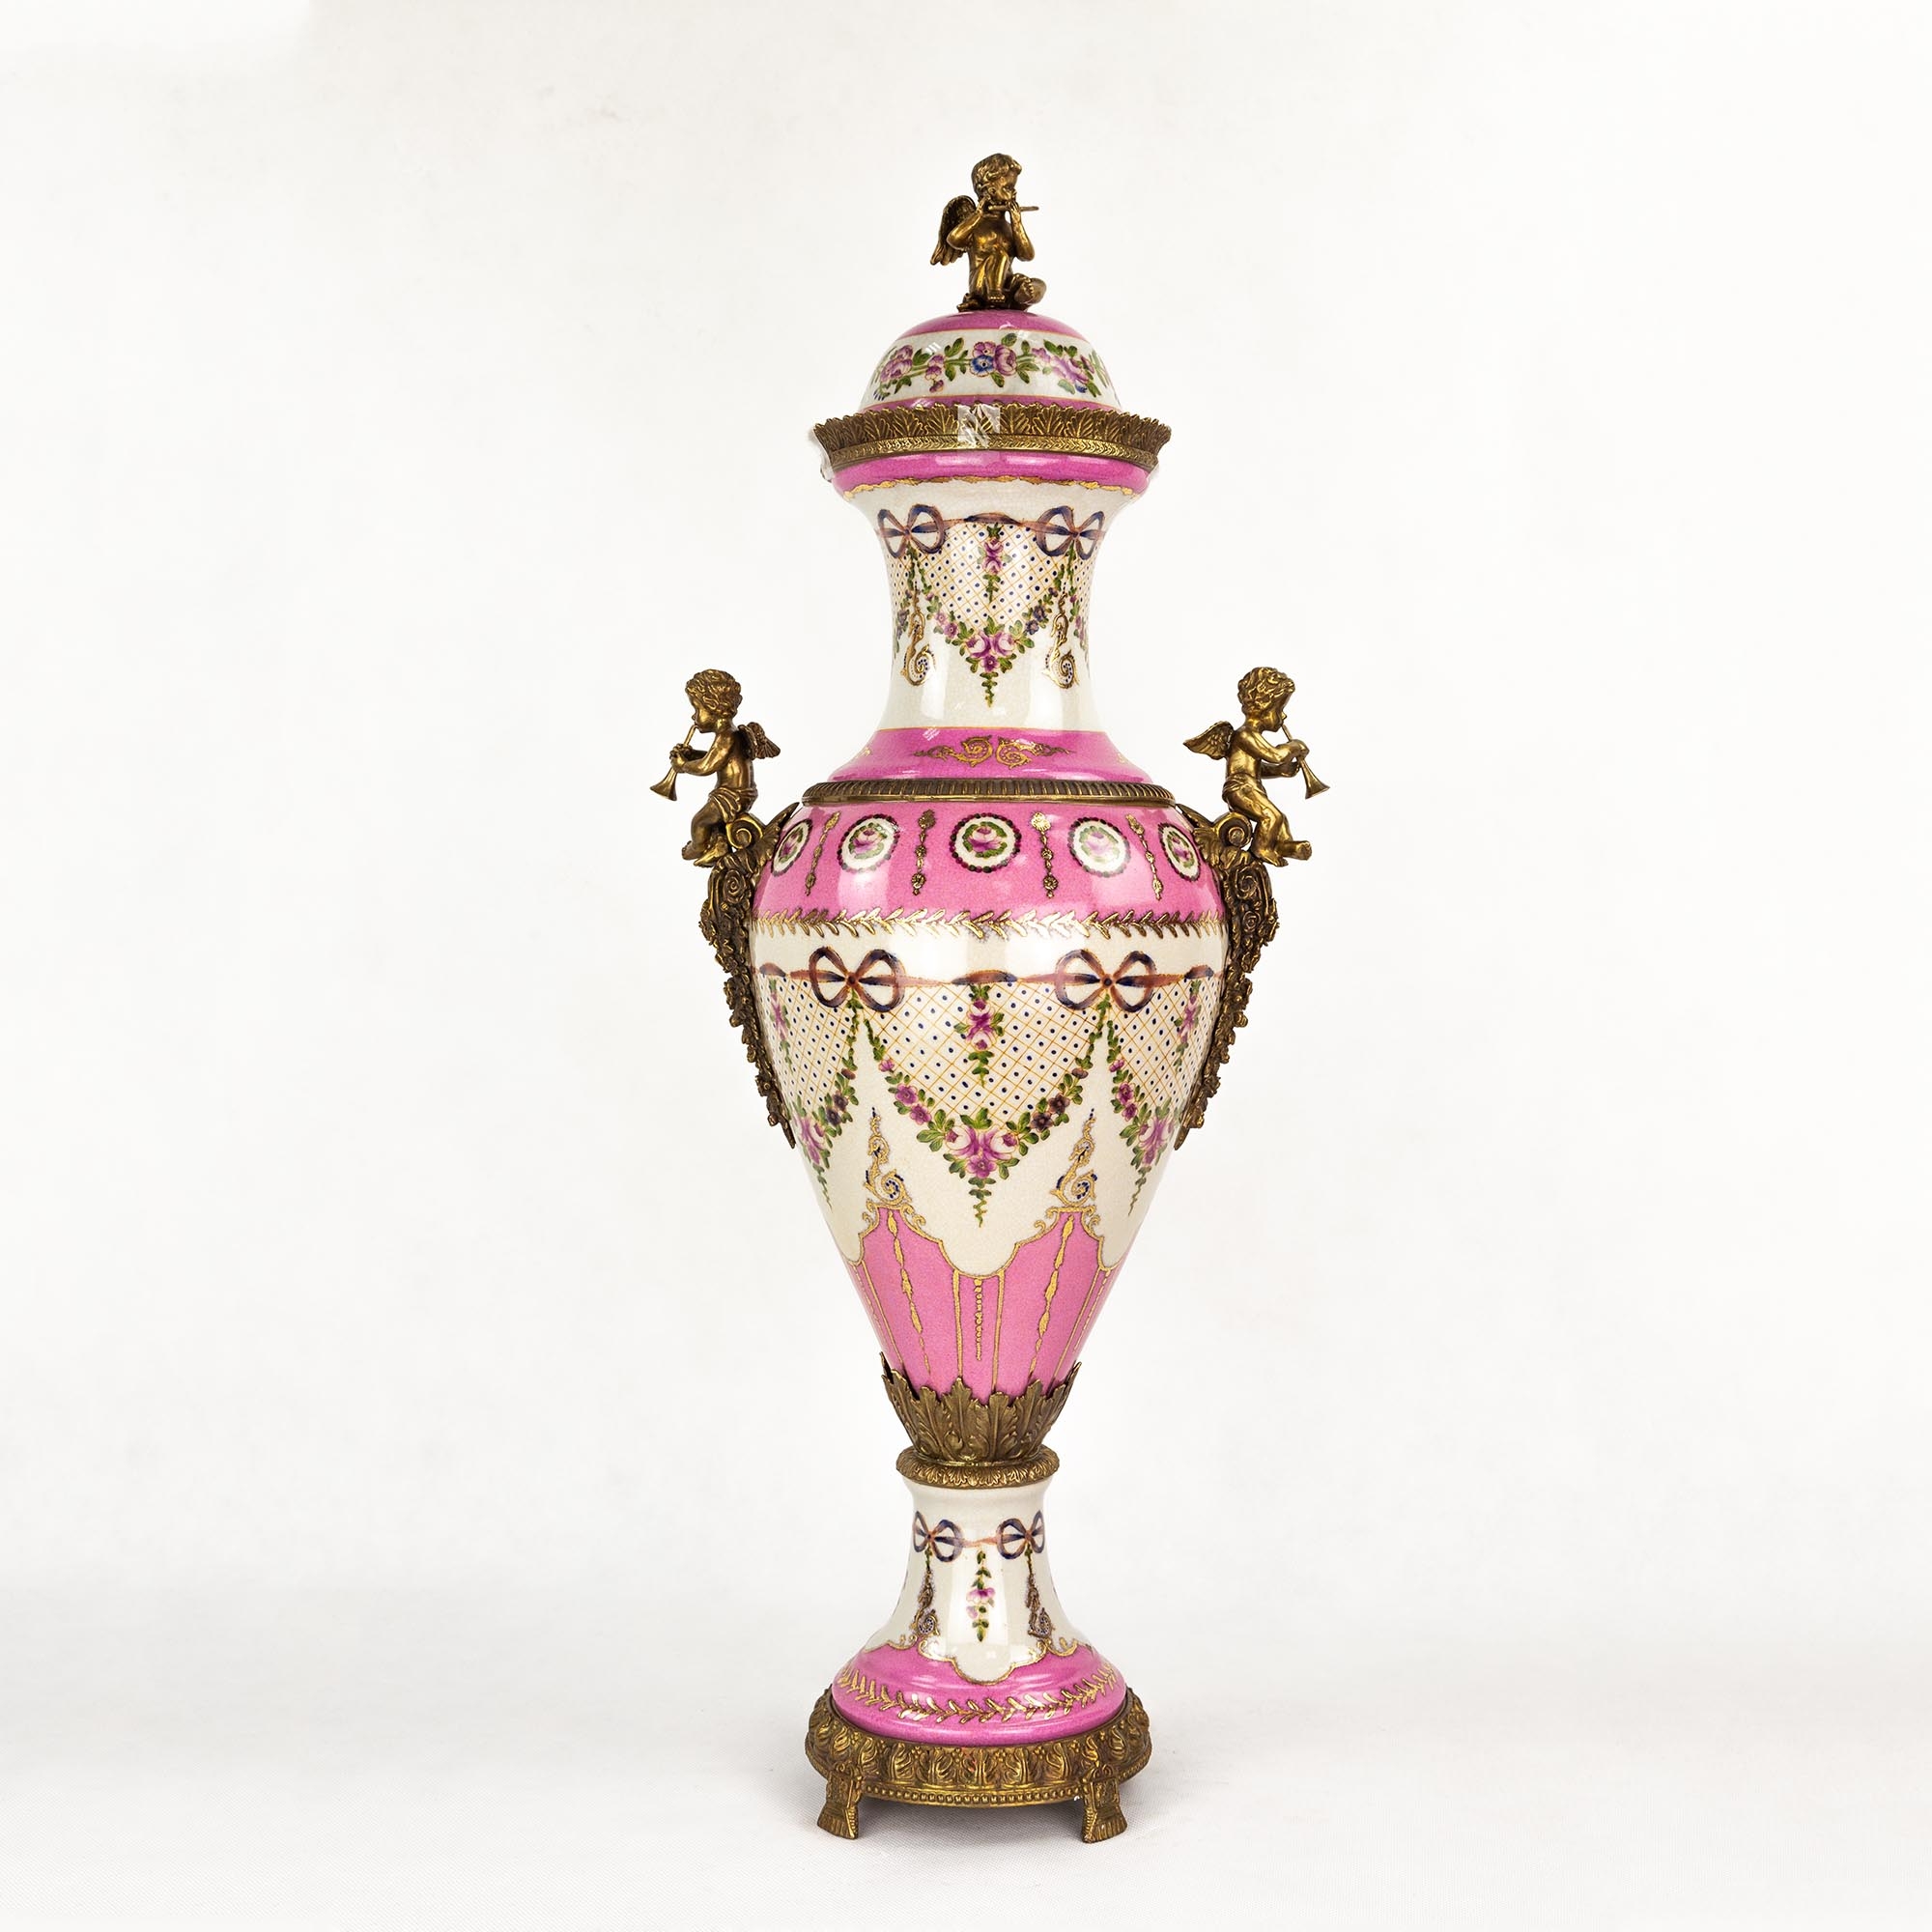 Ваза Wah luen handicraft фарфоровая с ангелами, розовая, 33х23х77 см ваза glasar фарфоровая мятного а и бронзовыми змеями 39 см